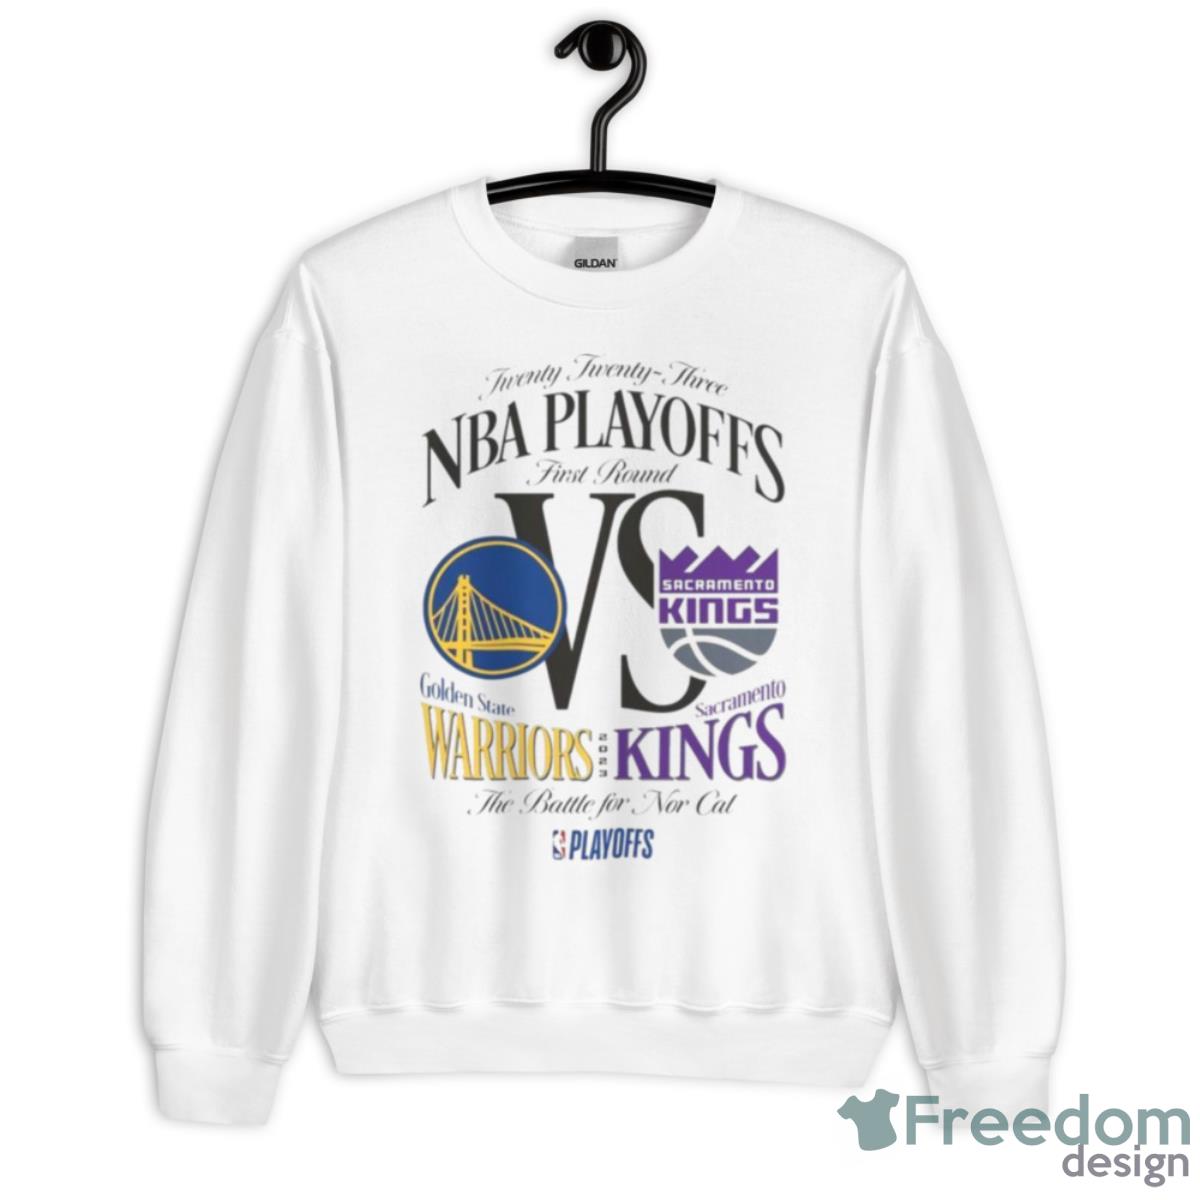 The Sacramento Kings Beam Team NBA Light The Beam Shirt, hoodie, sweatshirt  and tank top